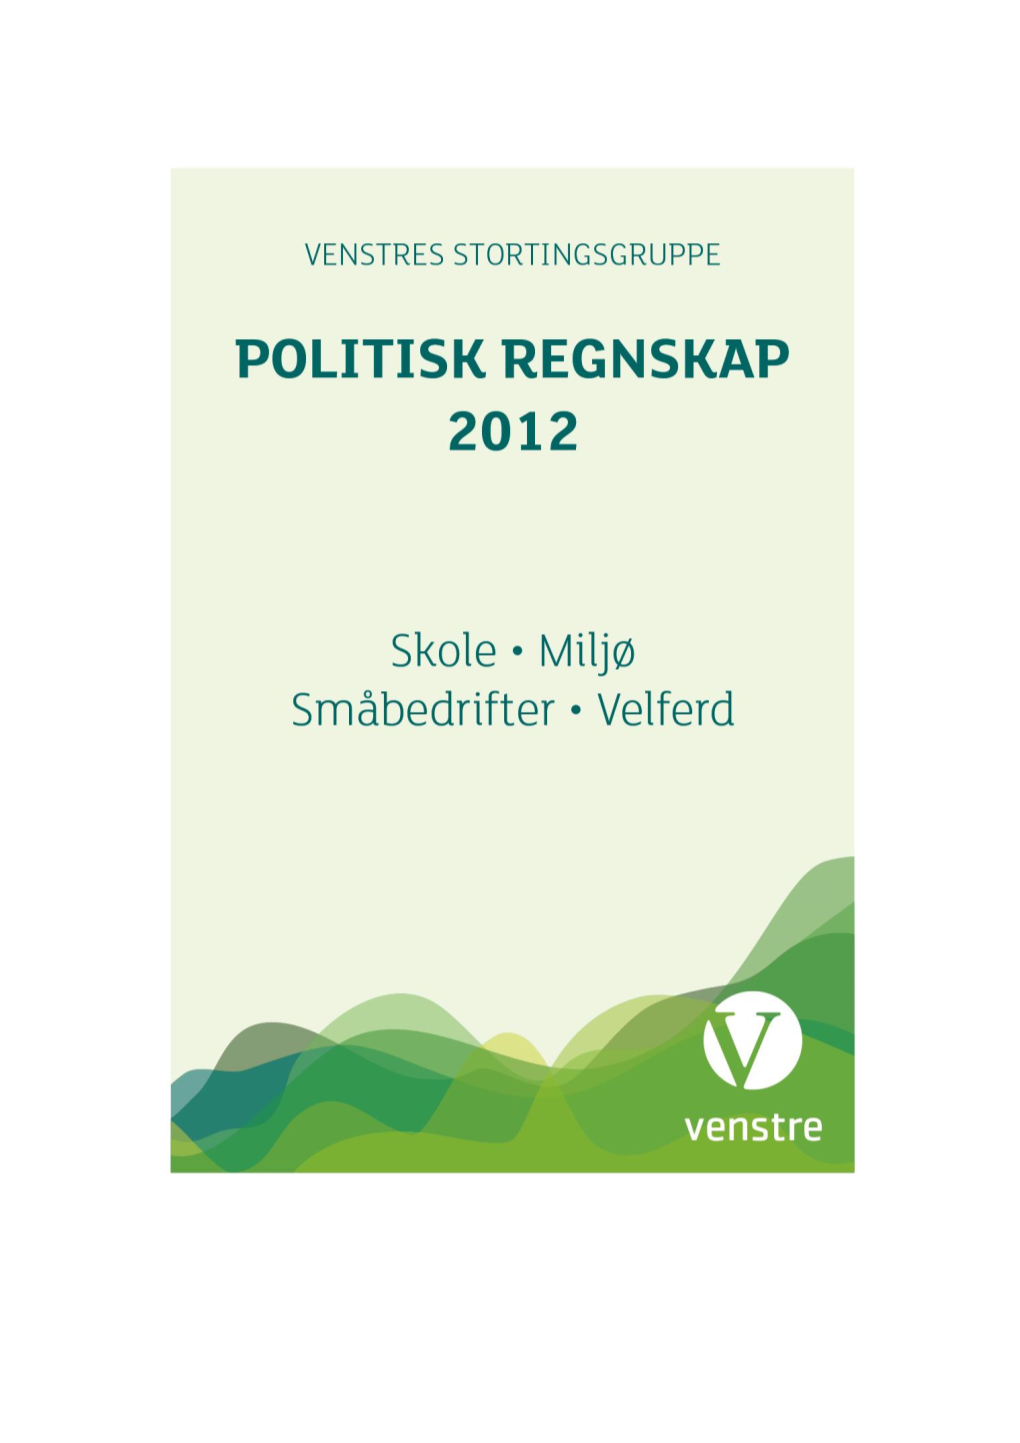 Politisk Regnskap for 2012